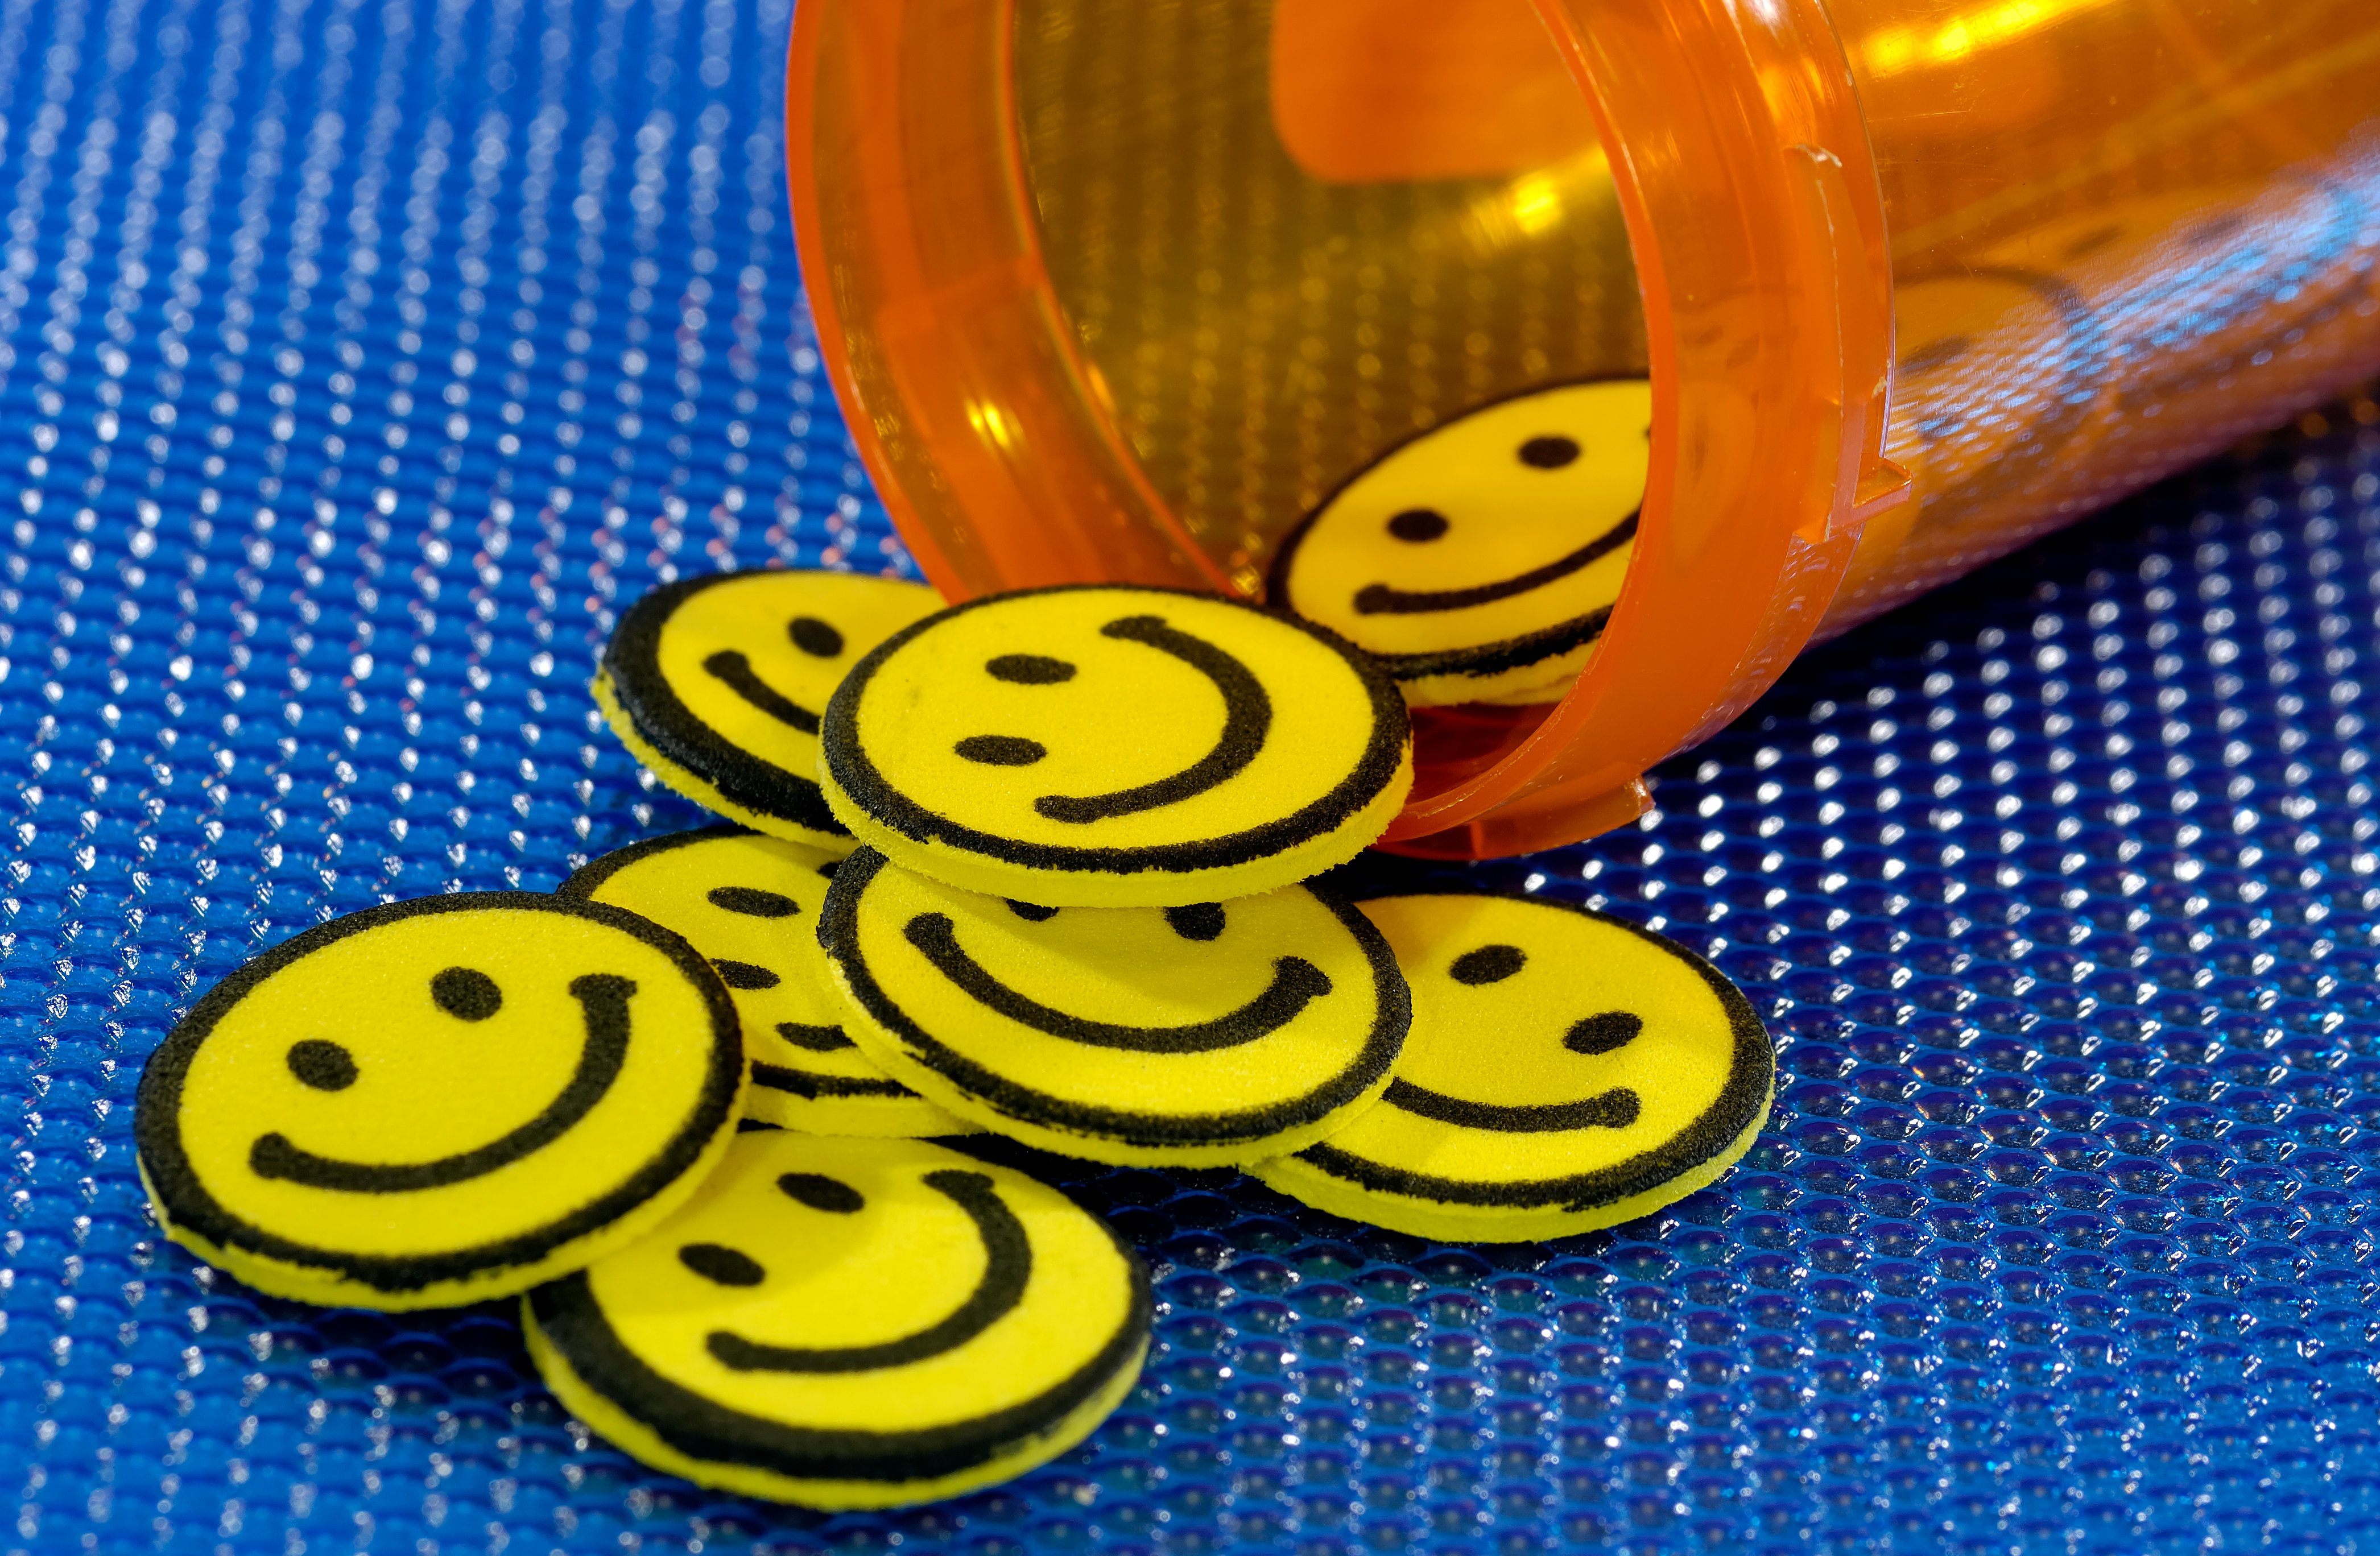 Happy 5, Narkoba Berbahaya yang Efeknya Justru Jauh dari "Happy"